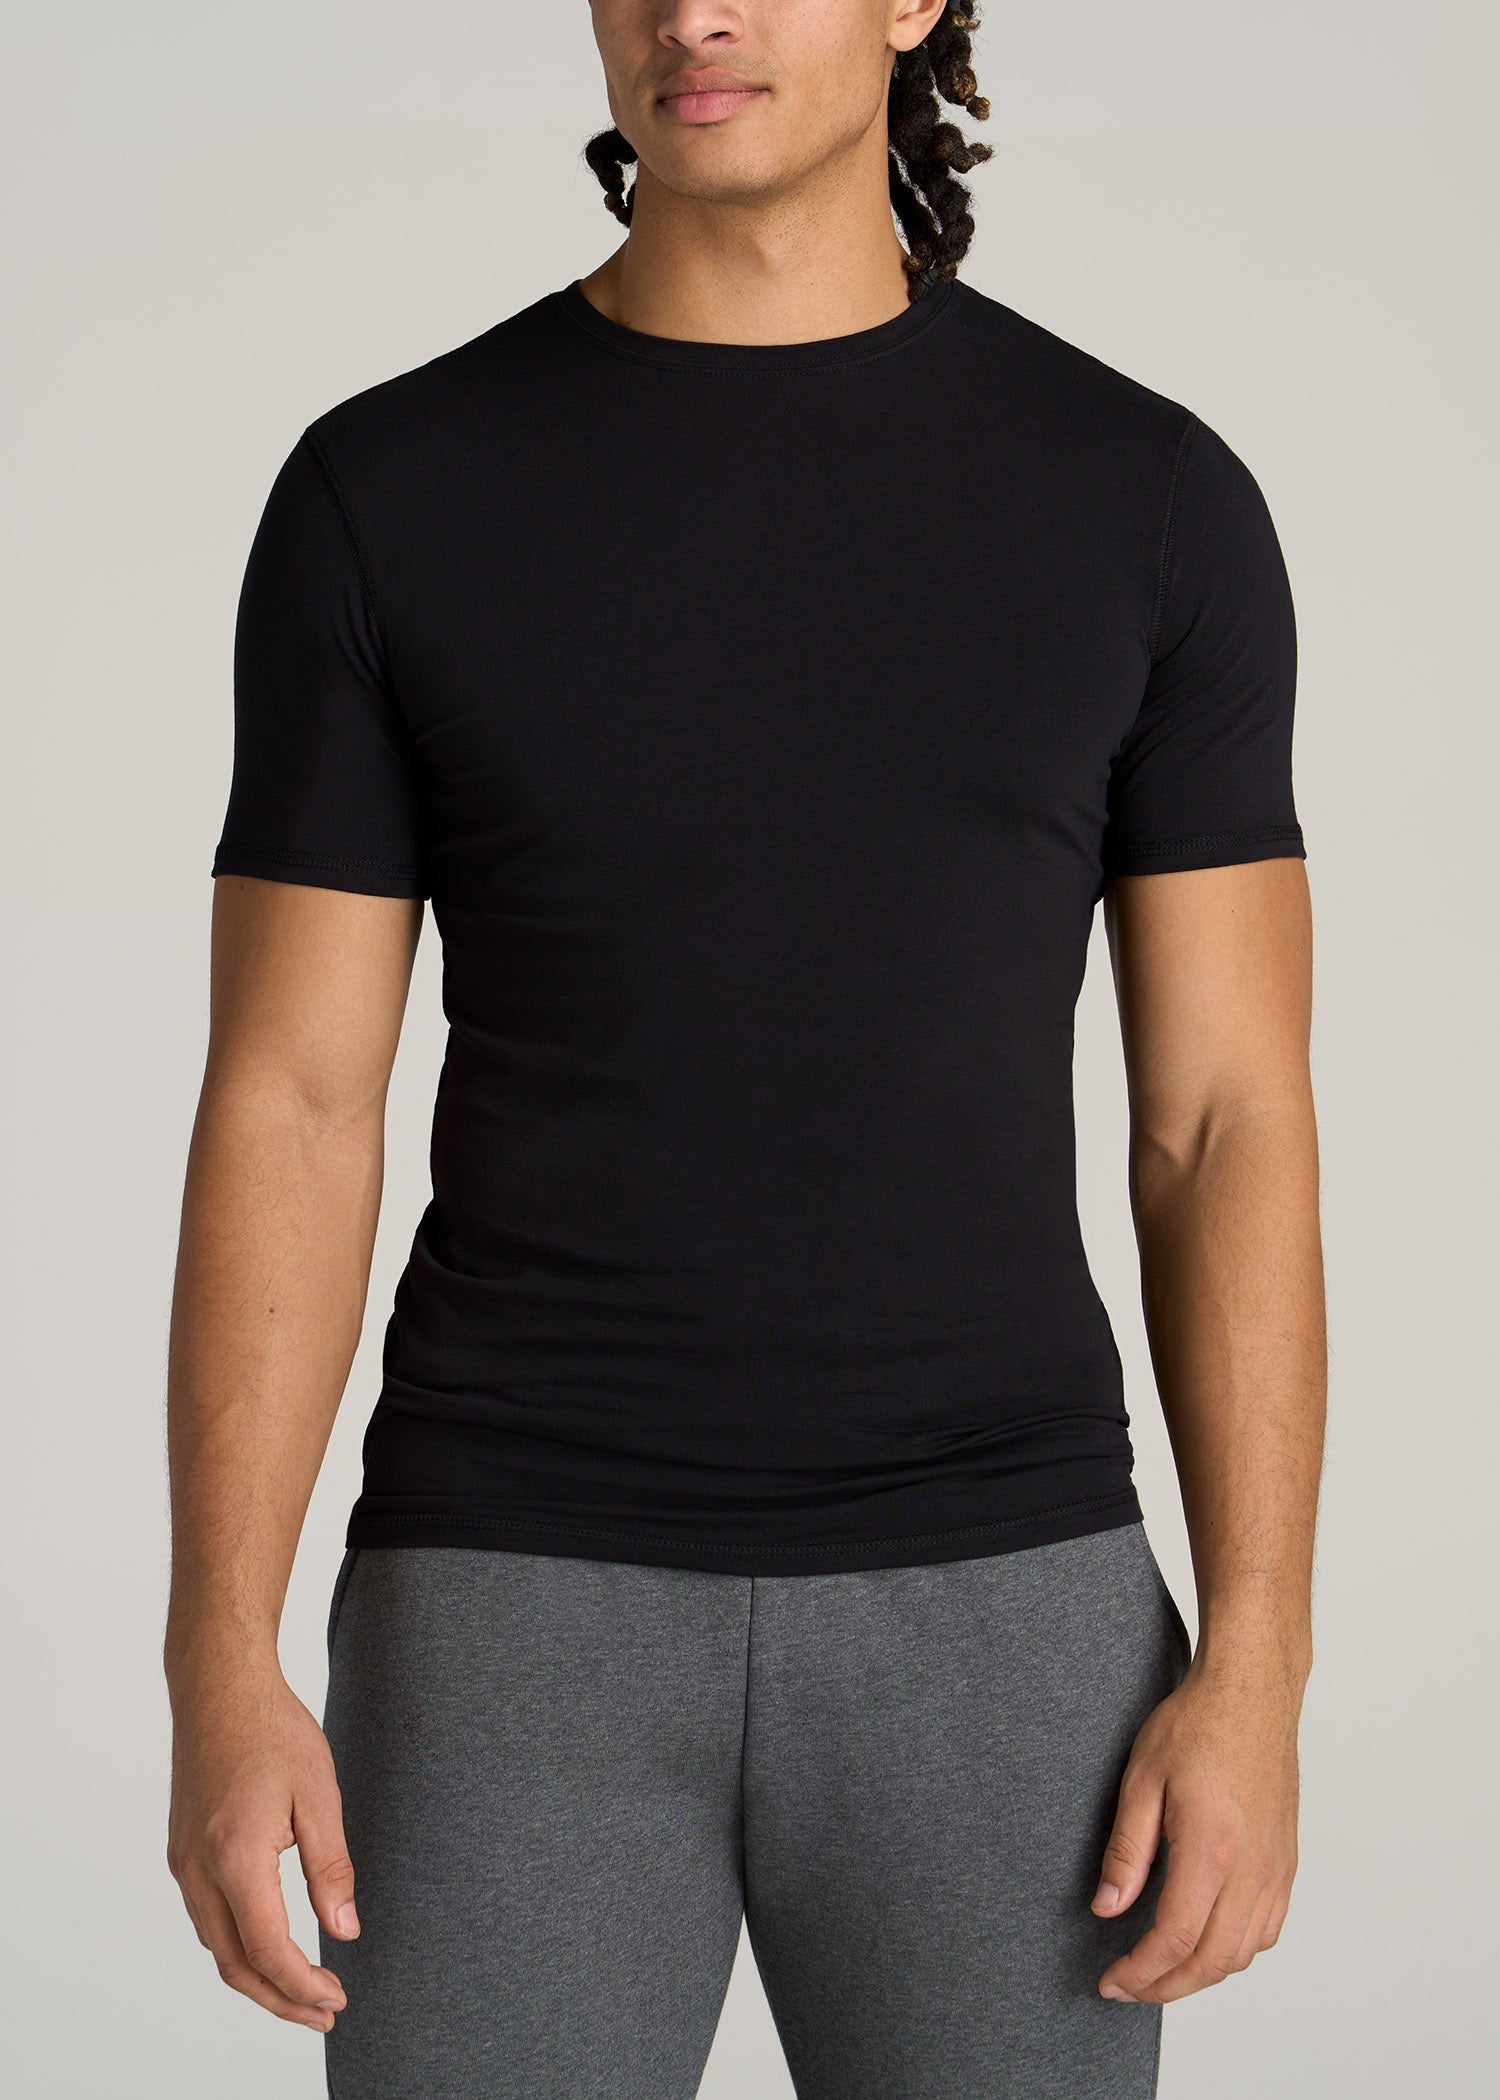 Slim Fit Black T-Shirt | Tall Men's Essentials | American Tall